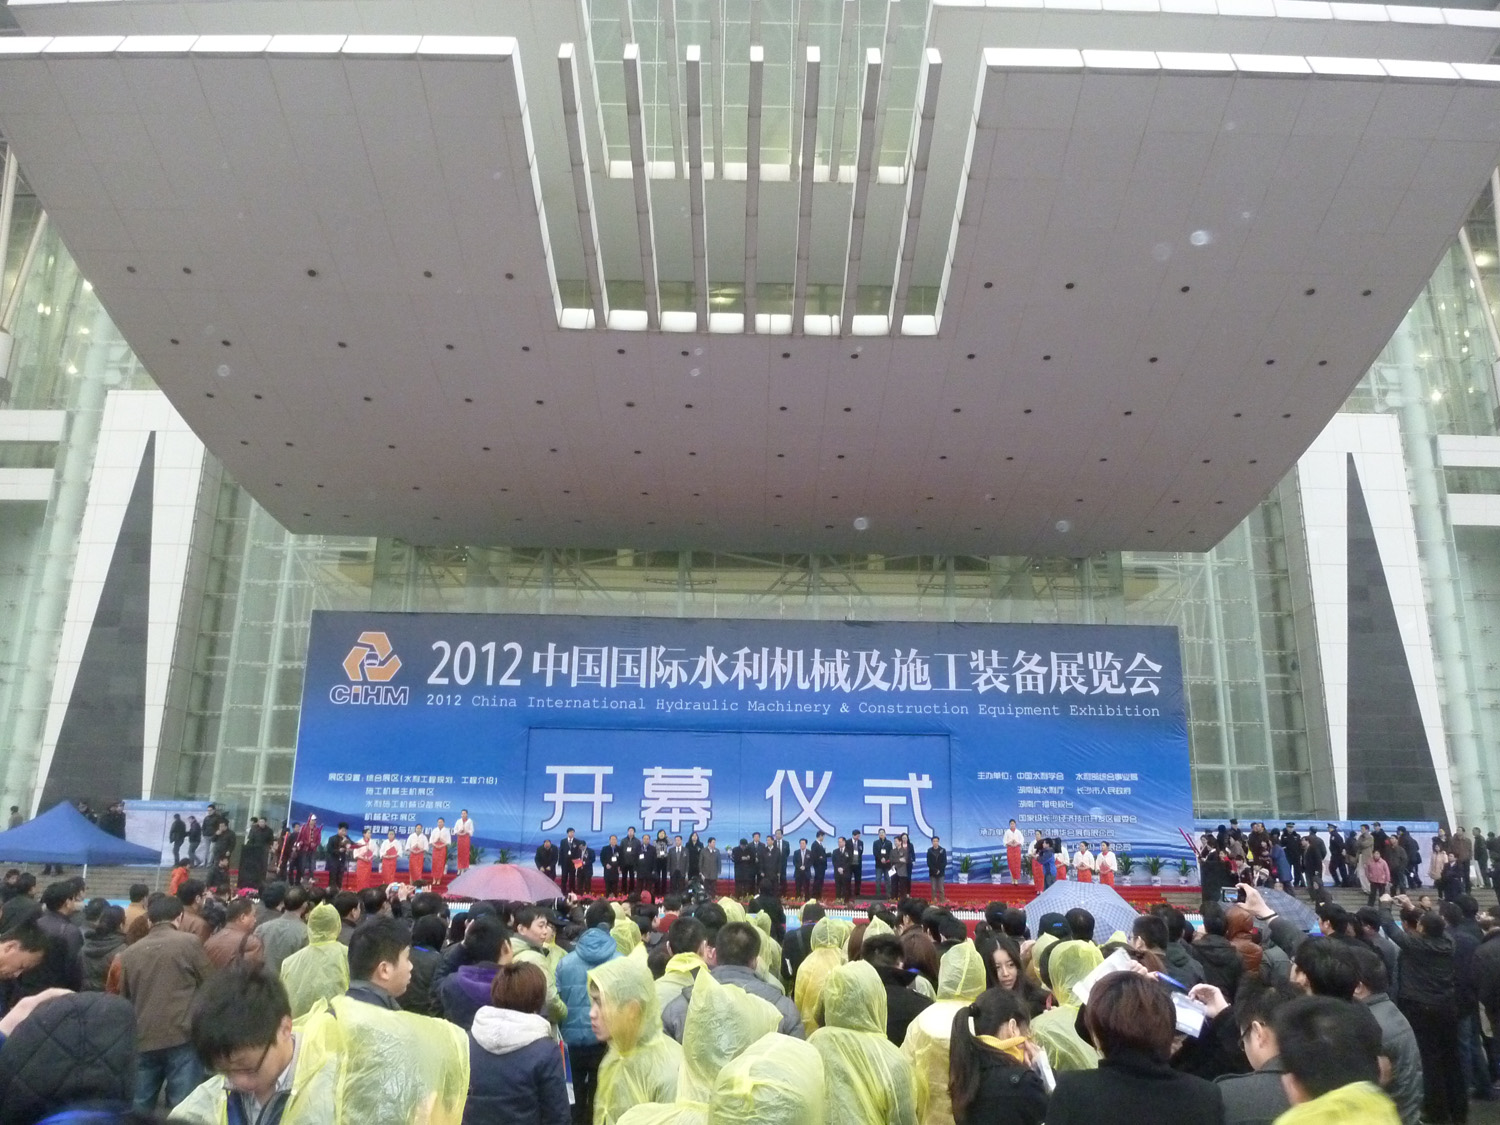 我厂参加2012中国国际水利机械及施工装备展览会